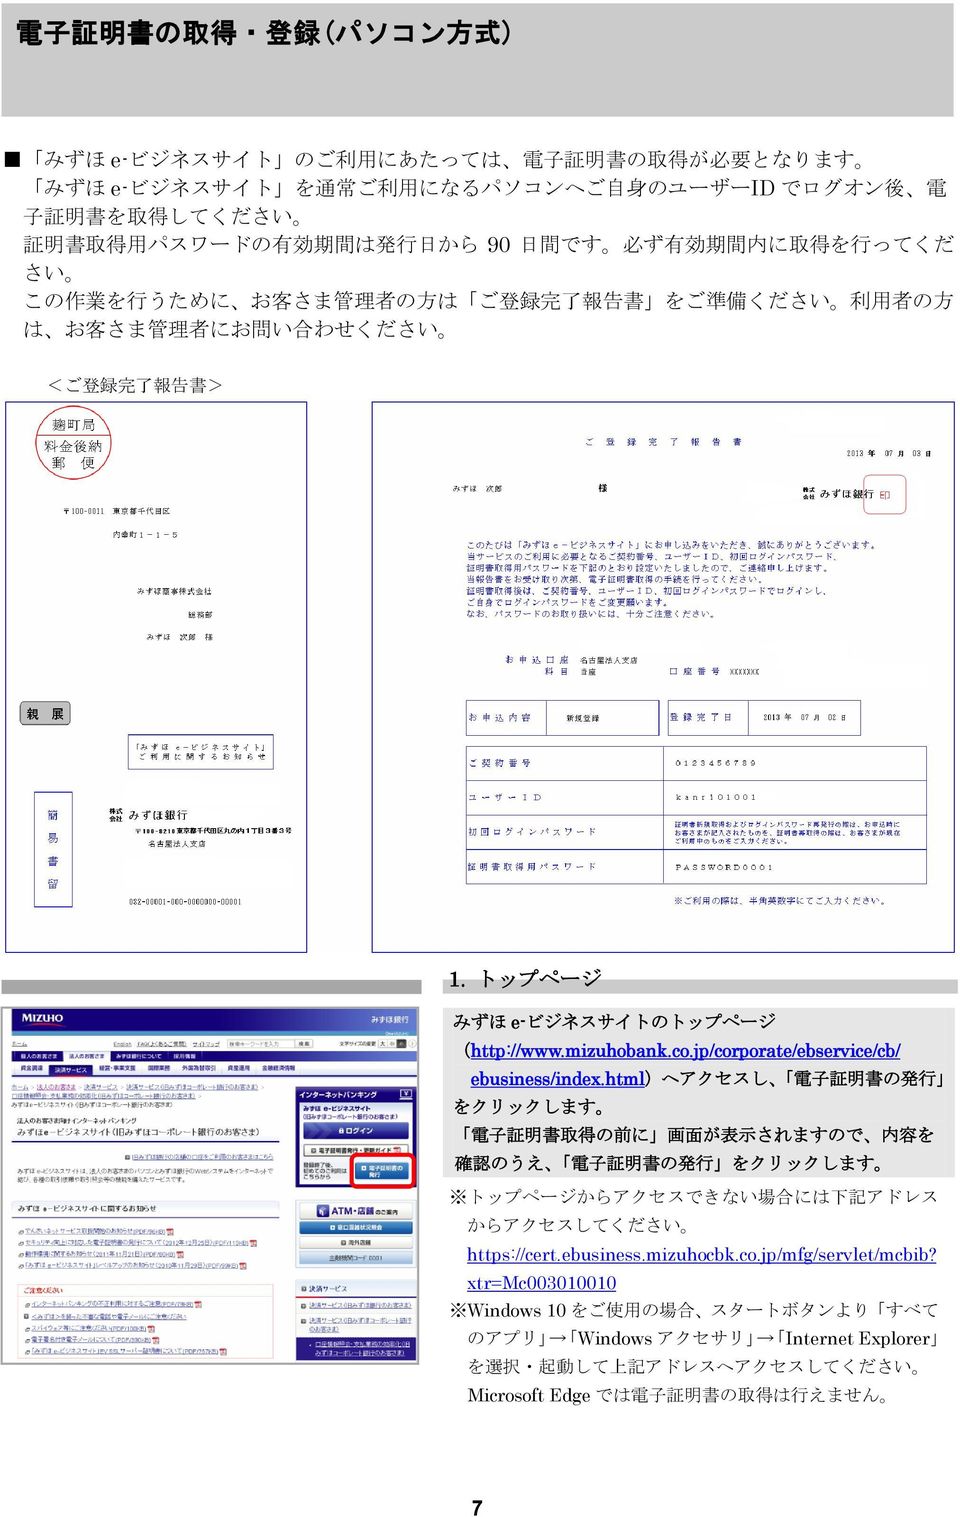 トップページ みずほ e-ビジネスサイトのトップページ (http://www.mizuhobank.co.jp/corporate/ebservice/cb/ ebusiness/index.